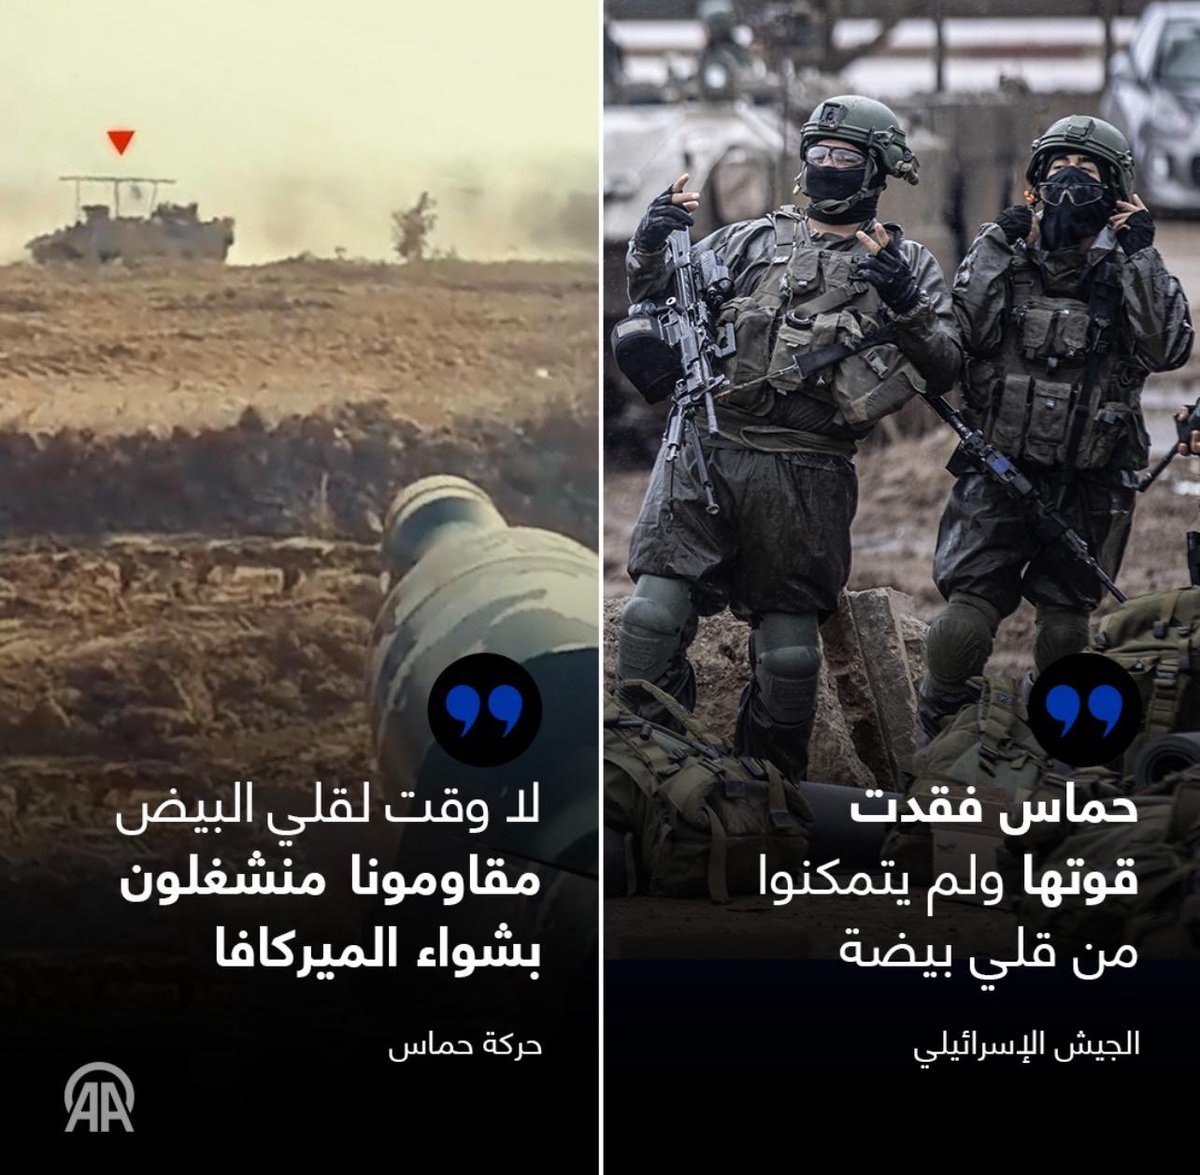 الجيش الصهيوني: 'حماس فقدت قوتها ولن يتمكنوا من قلي بيضة'.. #حماس ترد: 'لا وقت لدينا لقلي البيض، مقاومونا منشغلون بشواء الميركافا'